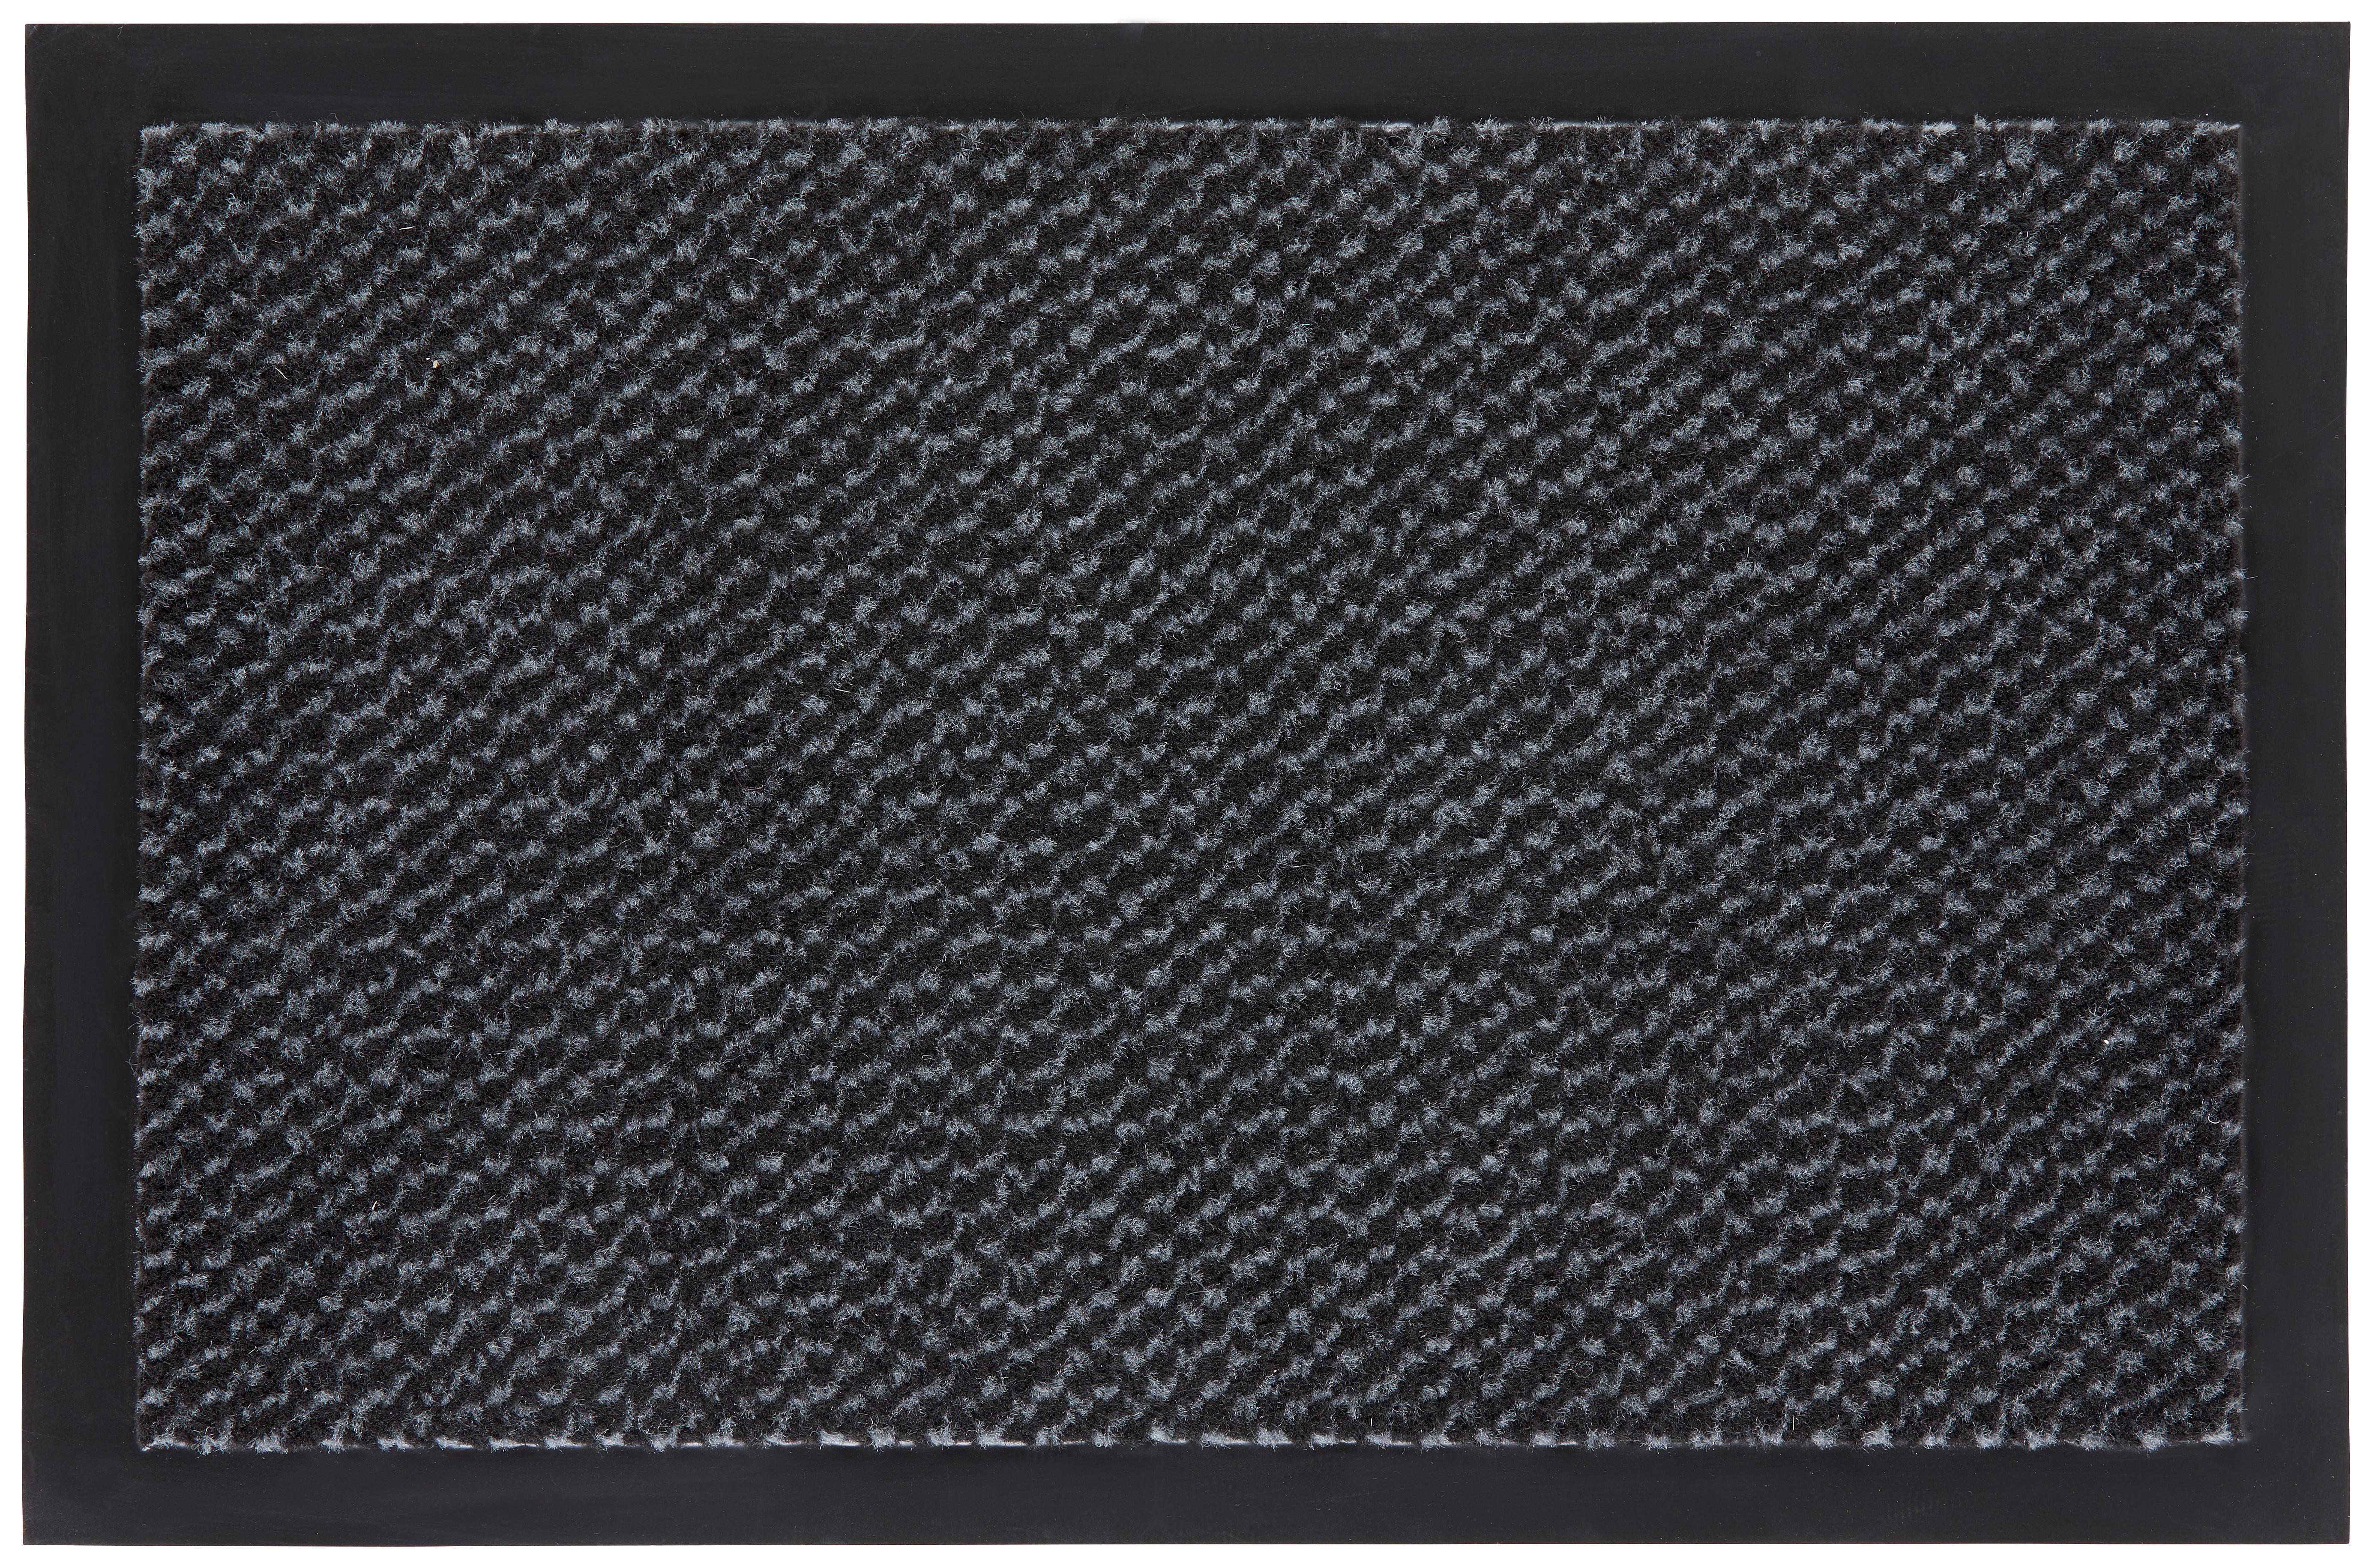 Lábtörlő Hamptons1 40/60 - Szürke/Fekete, konvencionális, Textil (40/60cm) - Modern Living